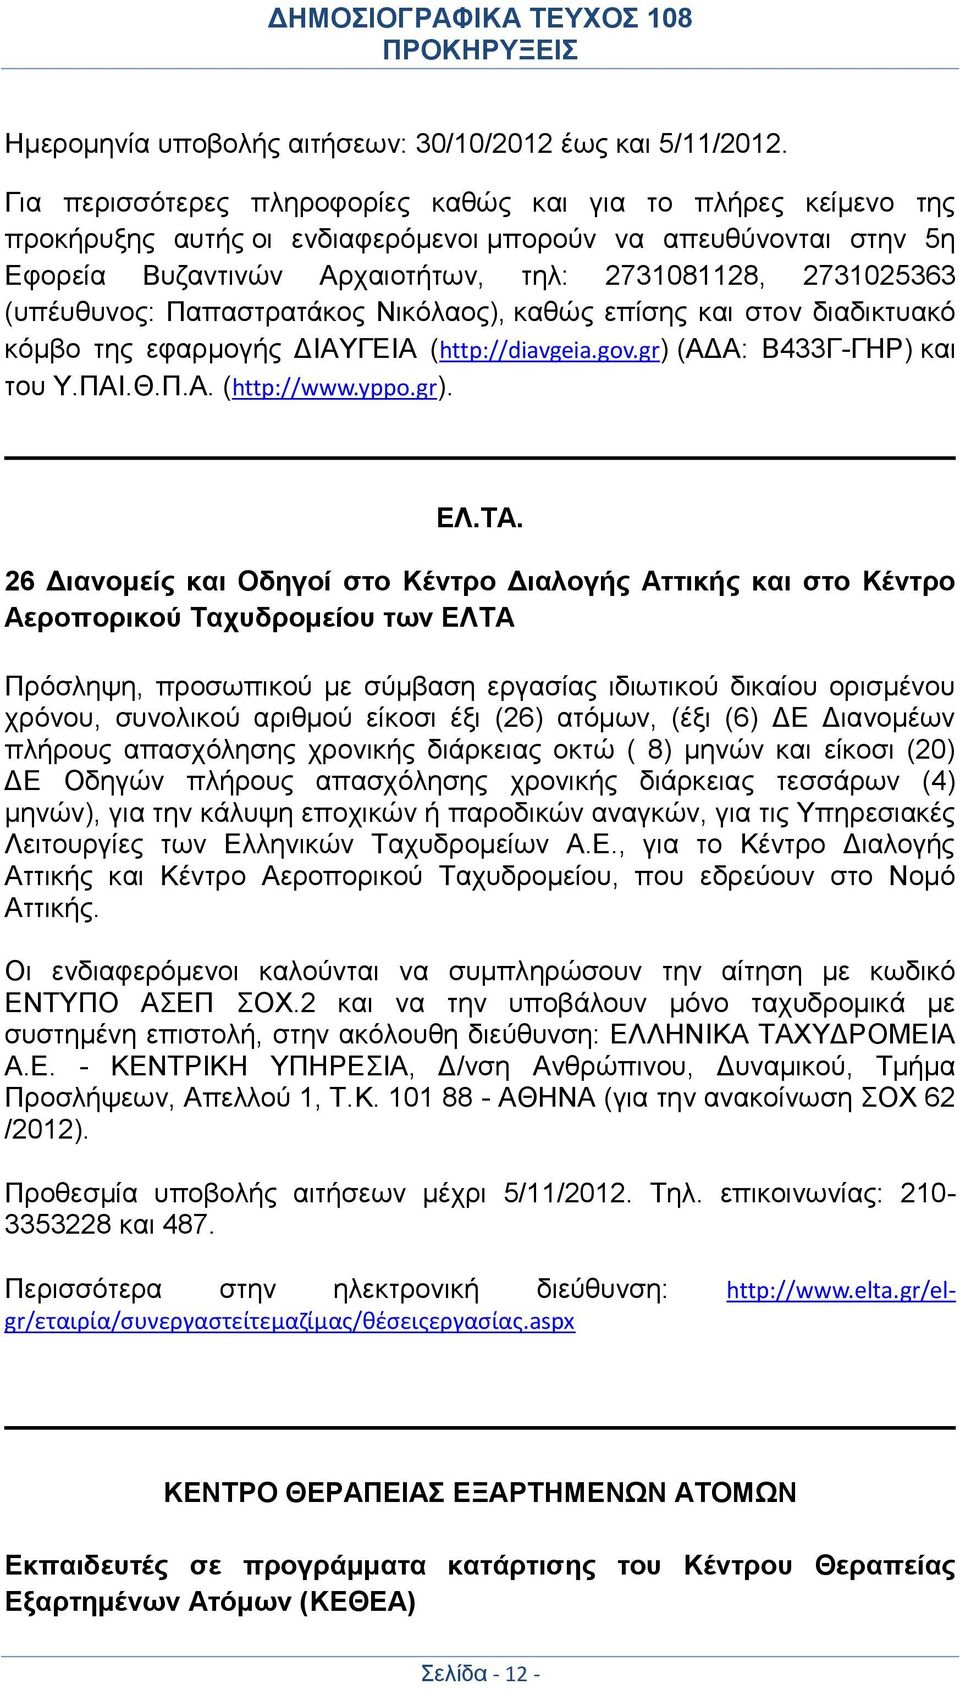 (υπέυθυνος: Παπαστρατάκος Νικόλαος), καθώς επίσης και στον διαδικτυακό κόμβο της εφαρμογής ΔΙΑΥΓΕΙΑ (http://diavgeia.gov.gr) (ΑΔΑ: Β433Γ-ΓΗΡ) και του Υ.ΠΑΙ.Θ.Π.Α. (http://www.yppo.gr). ΕΛ.ΤΑ.